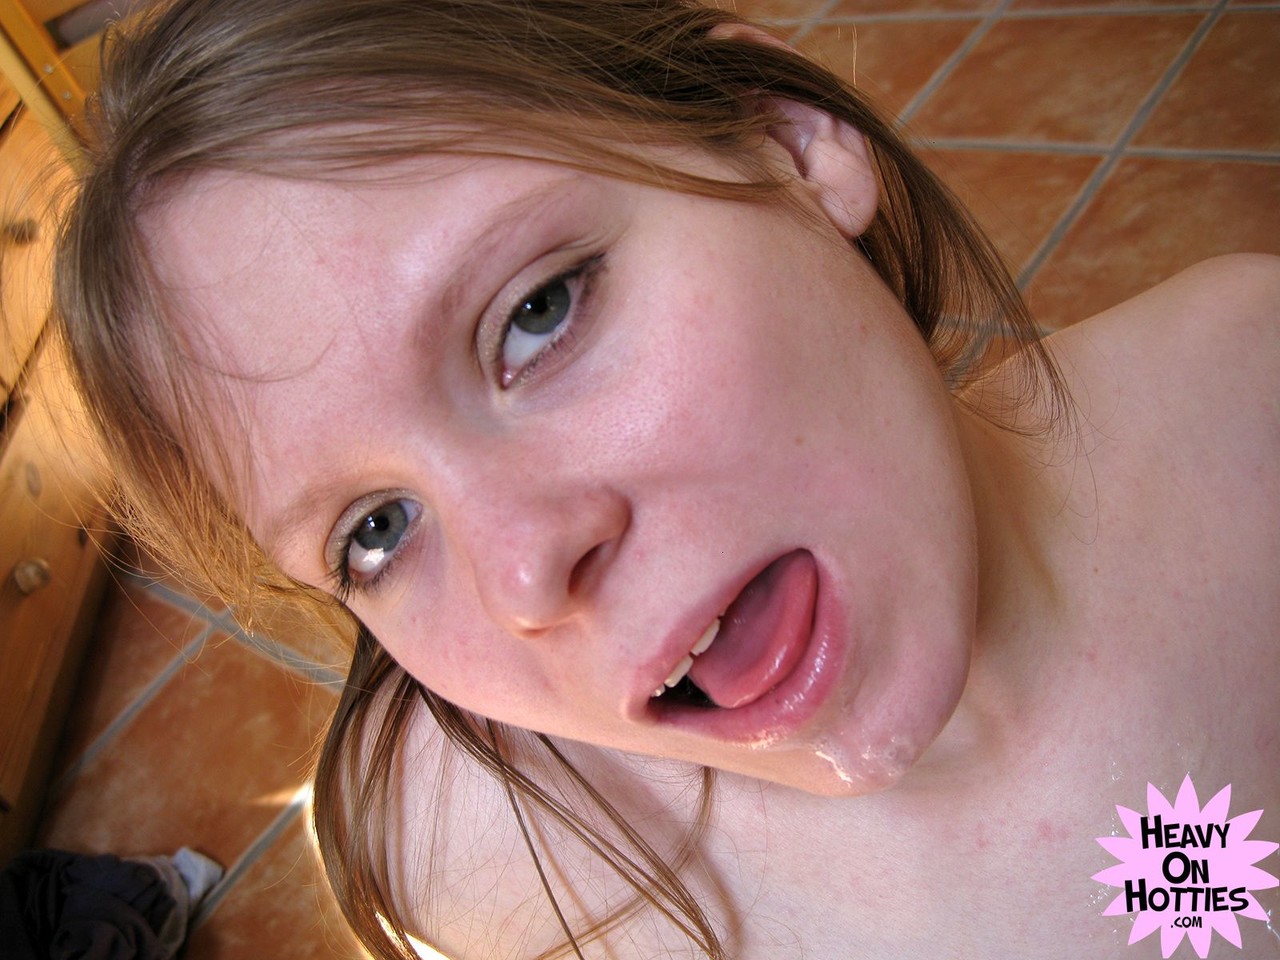 Amateur girl fondles her big natural tits during a POV blowjob zdjęcie porno #424293091 | Heavy On Hotties Pics, Caroline, Close Up, mobilne porno